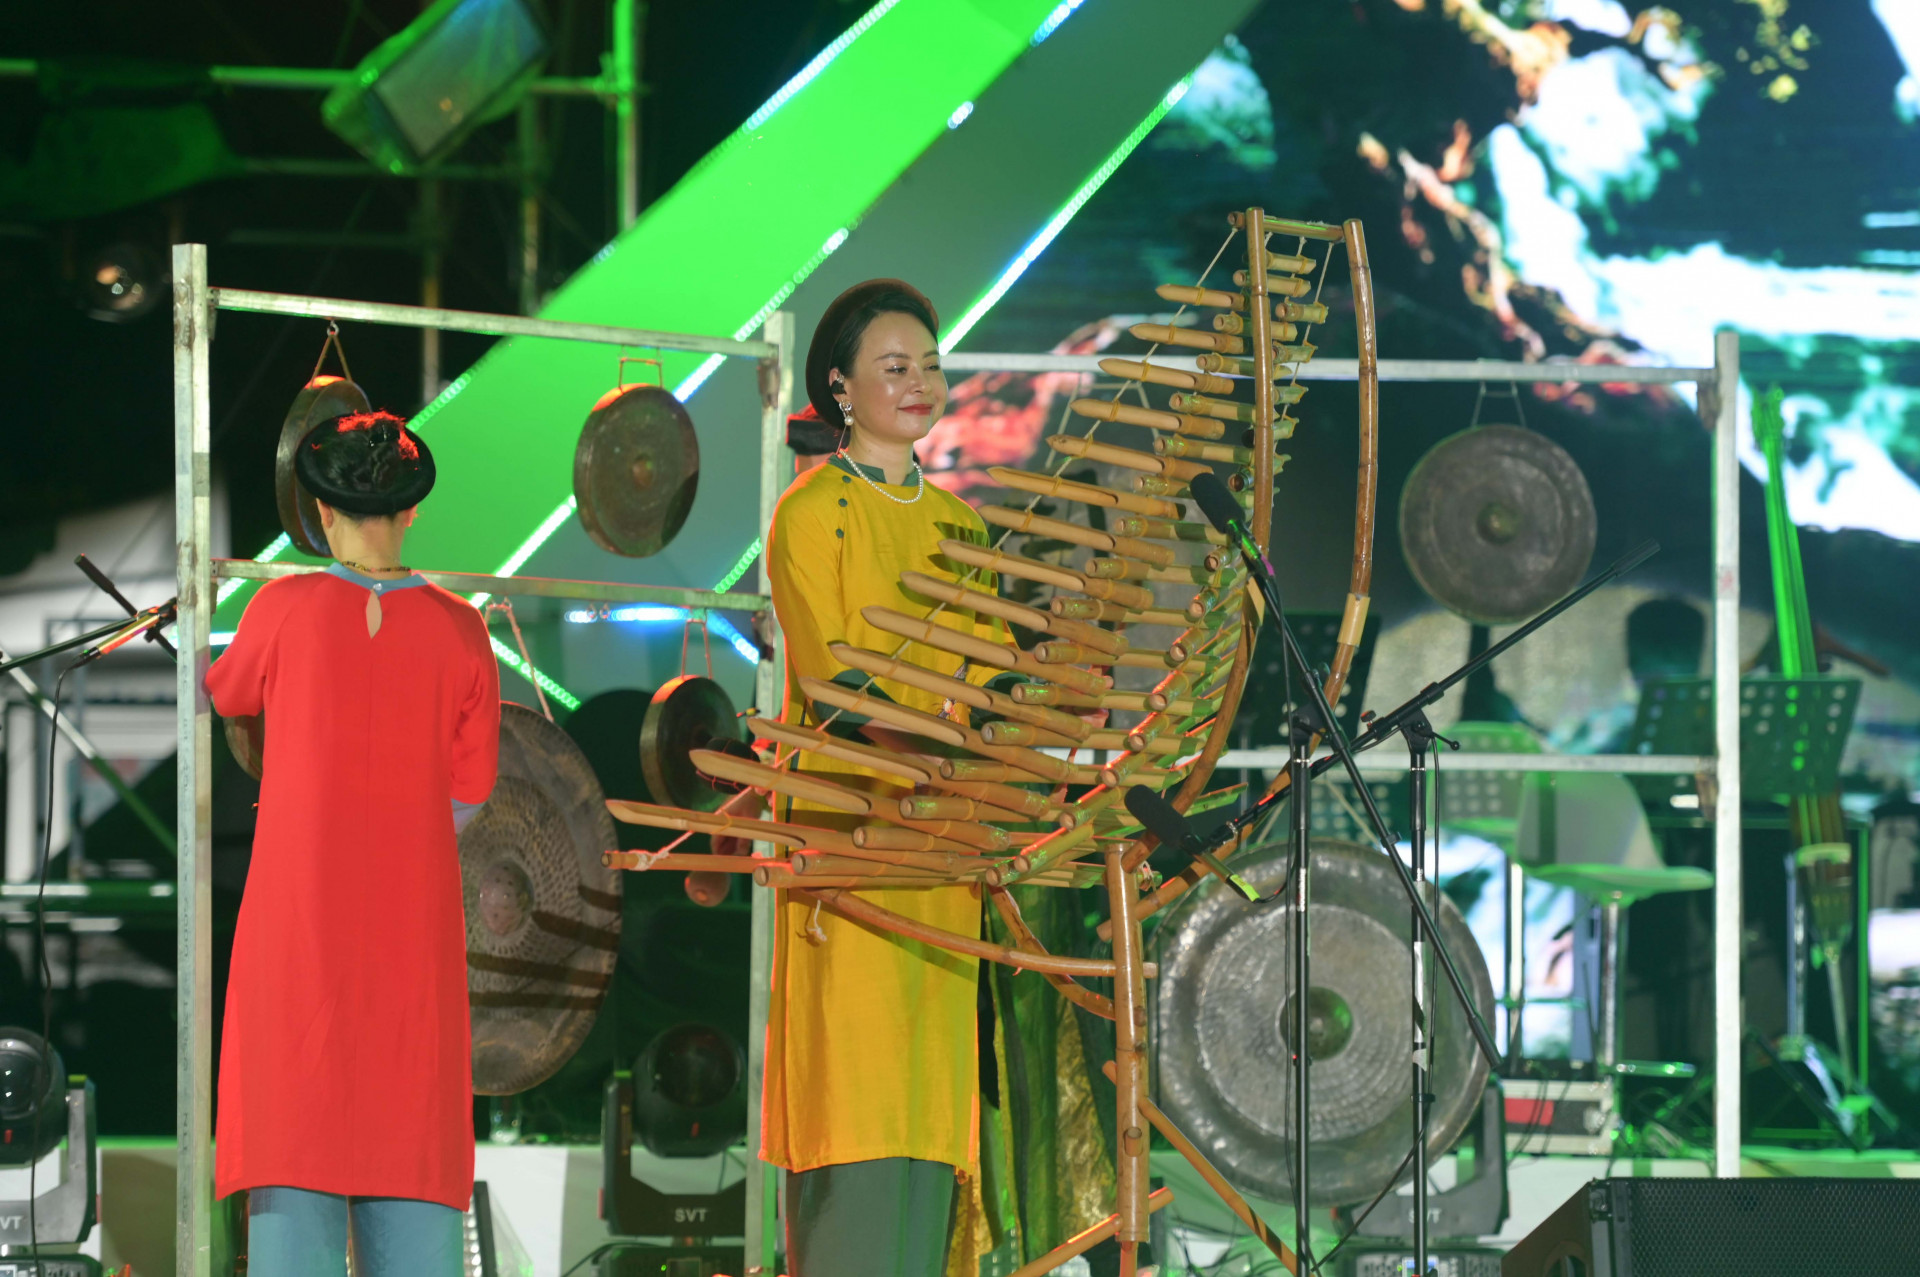 Với tác phẩm Ru rừng do mình sáng tác, nghệ sĩ Trần Mạnh Tuấn đưa vào tiết mục những nhạc cụ đến từ tây nguyên như đàn Trưng, cồng chiêng.